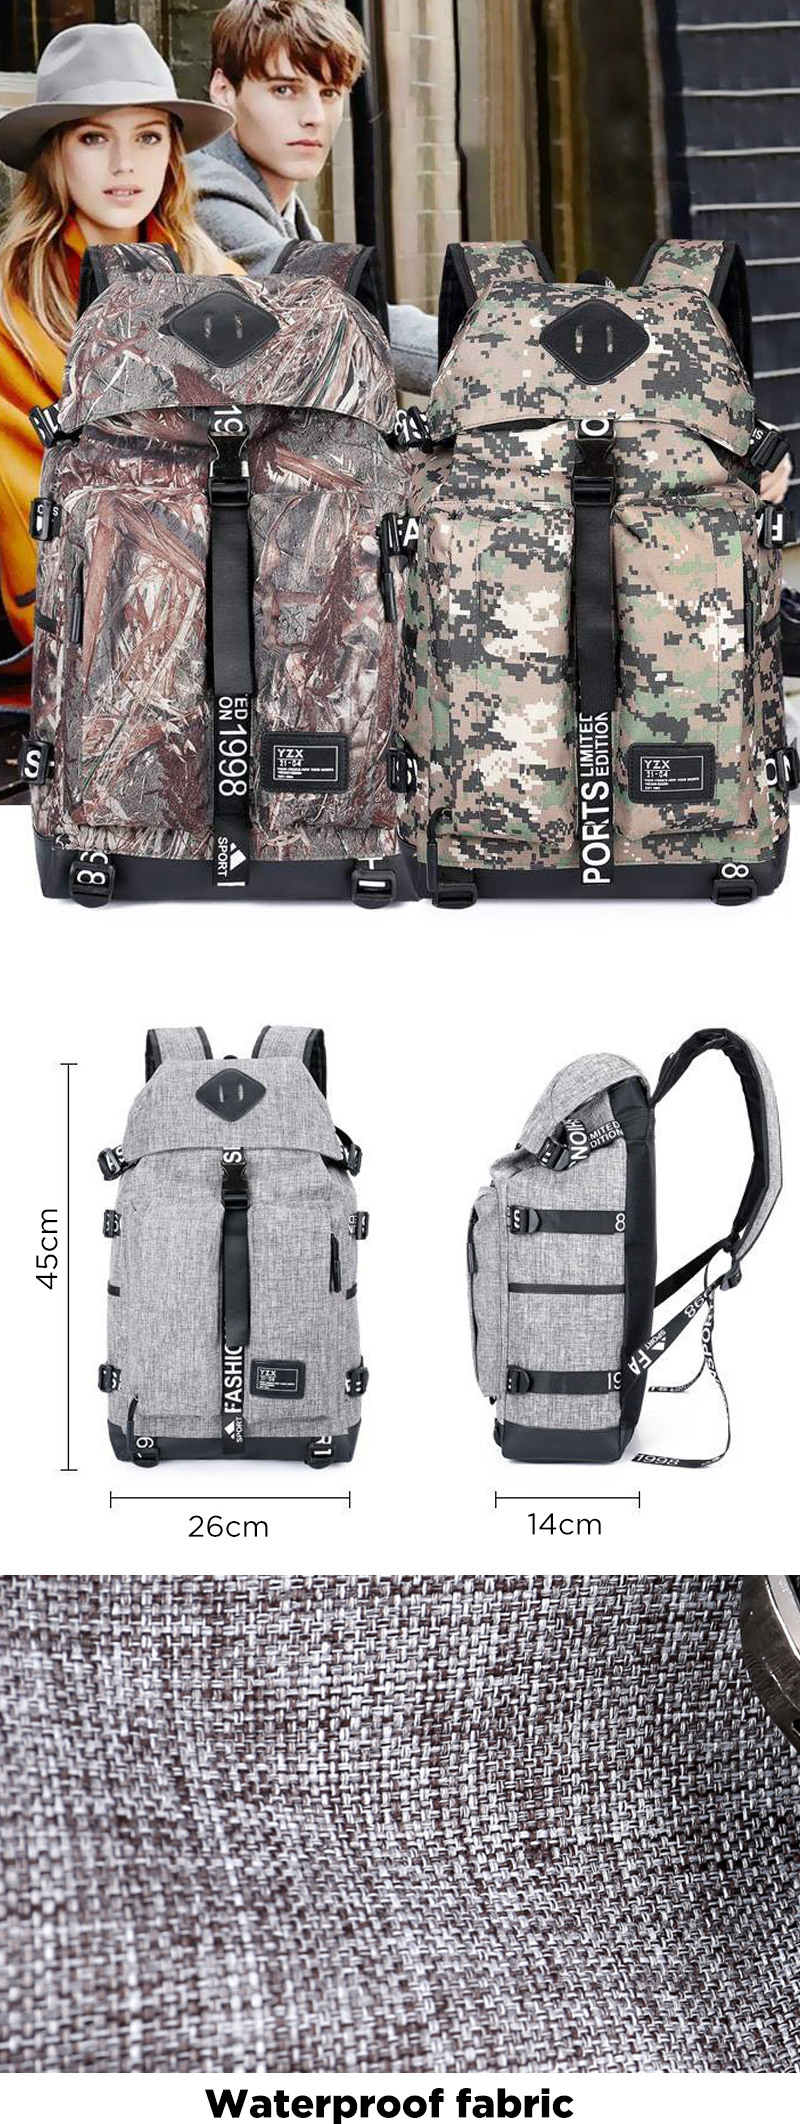 17L-Backpack-Laptop-Bag-Camping-Travel-School-Bag-Handbag-Shoulder-Bag-1525920-1